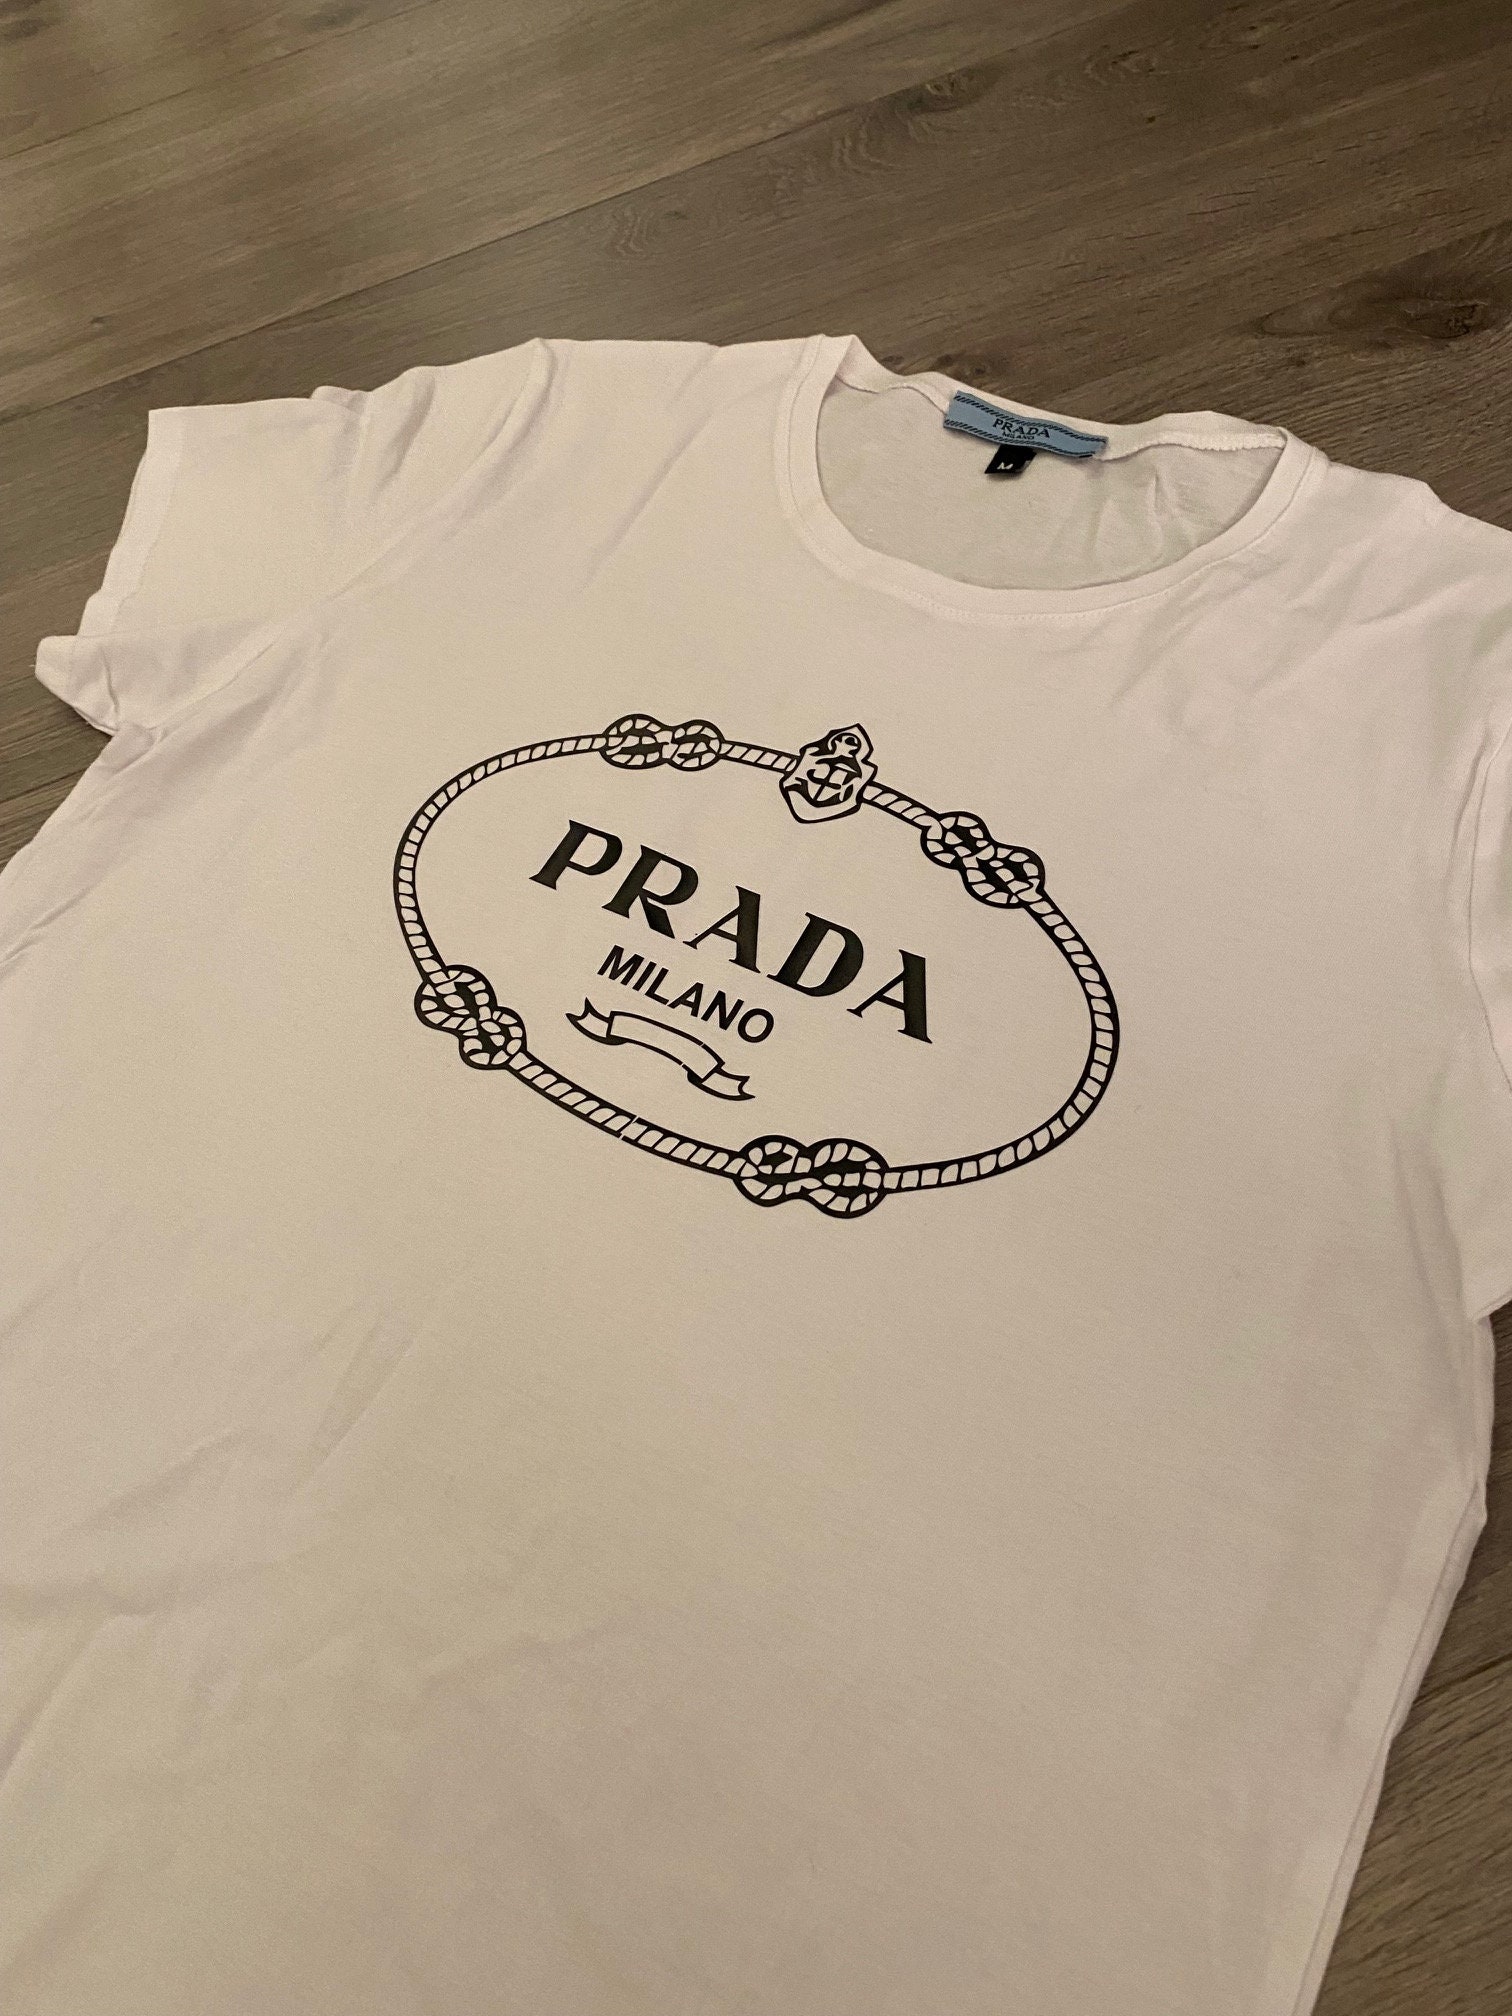 Vintage Prada Short sleeved T-shirt Tshirt White Size M - Etsy